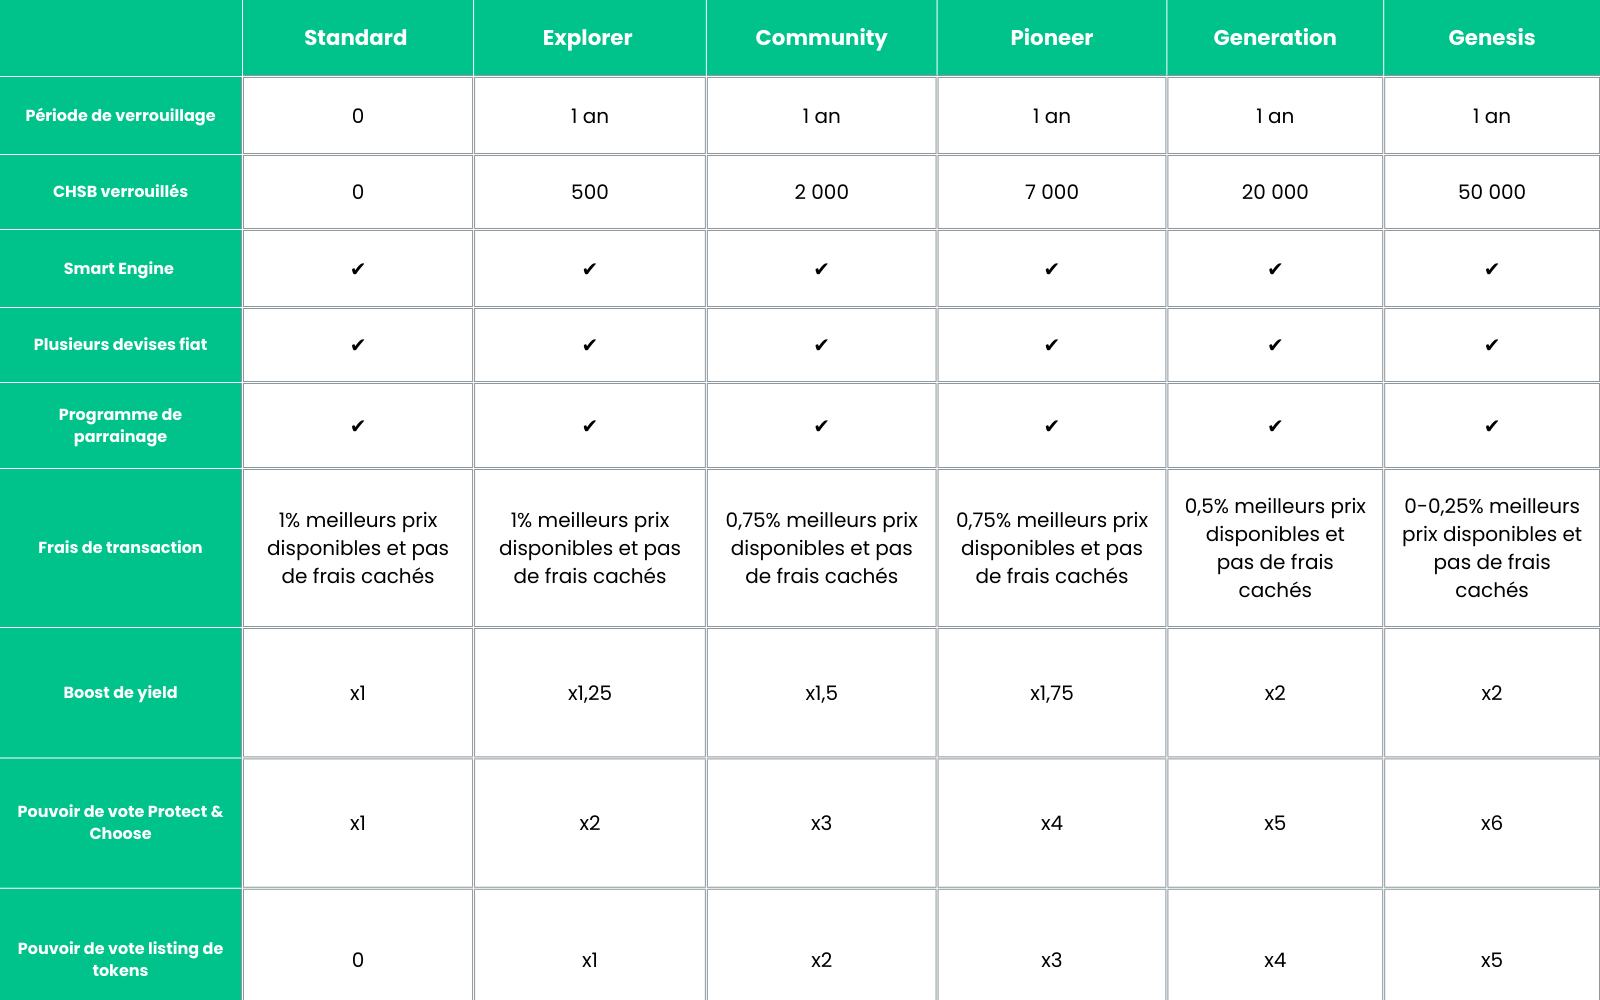 Comparaison des niveaux Premium (NB: seuls les détenteurs de CHSB peuvent voter pour le Protect & Choose)